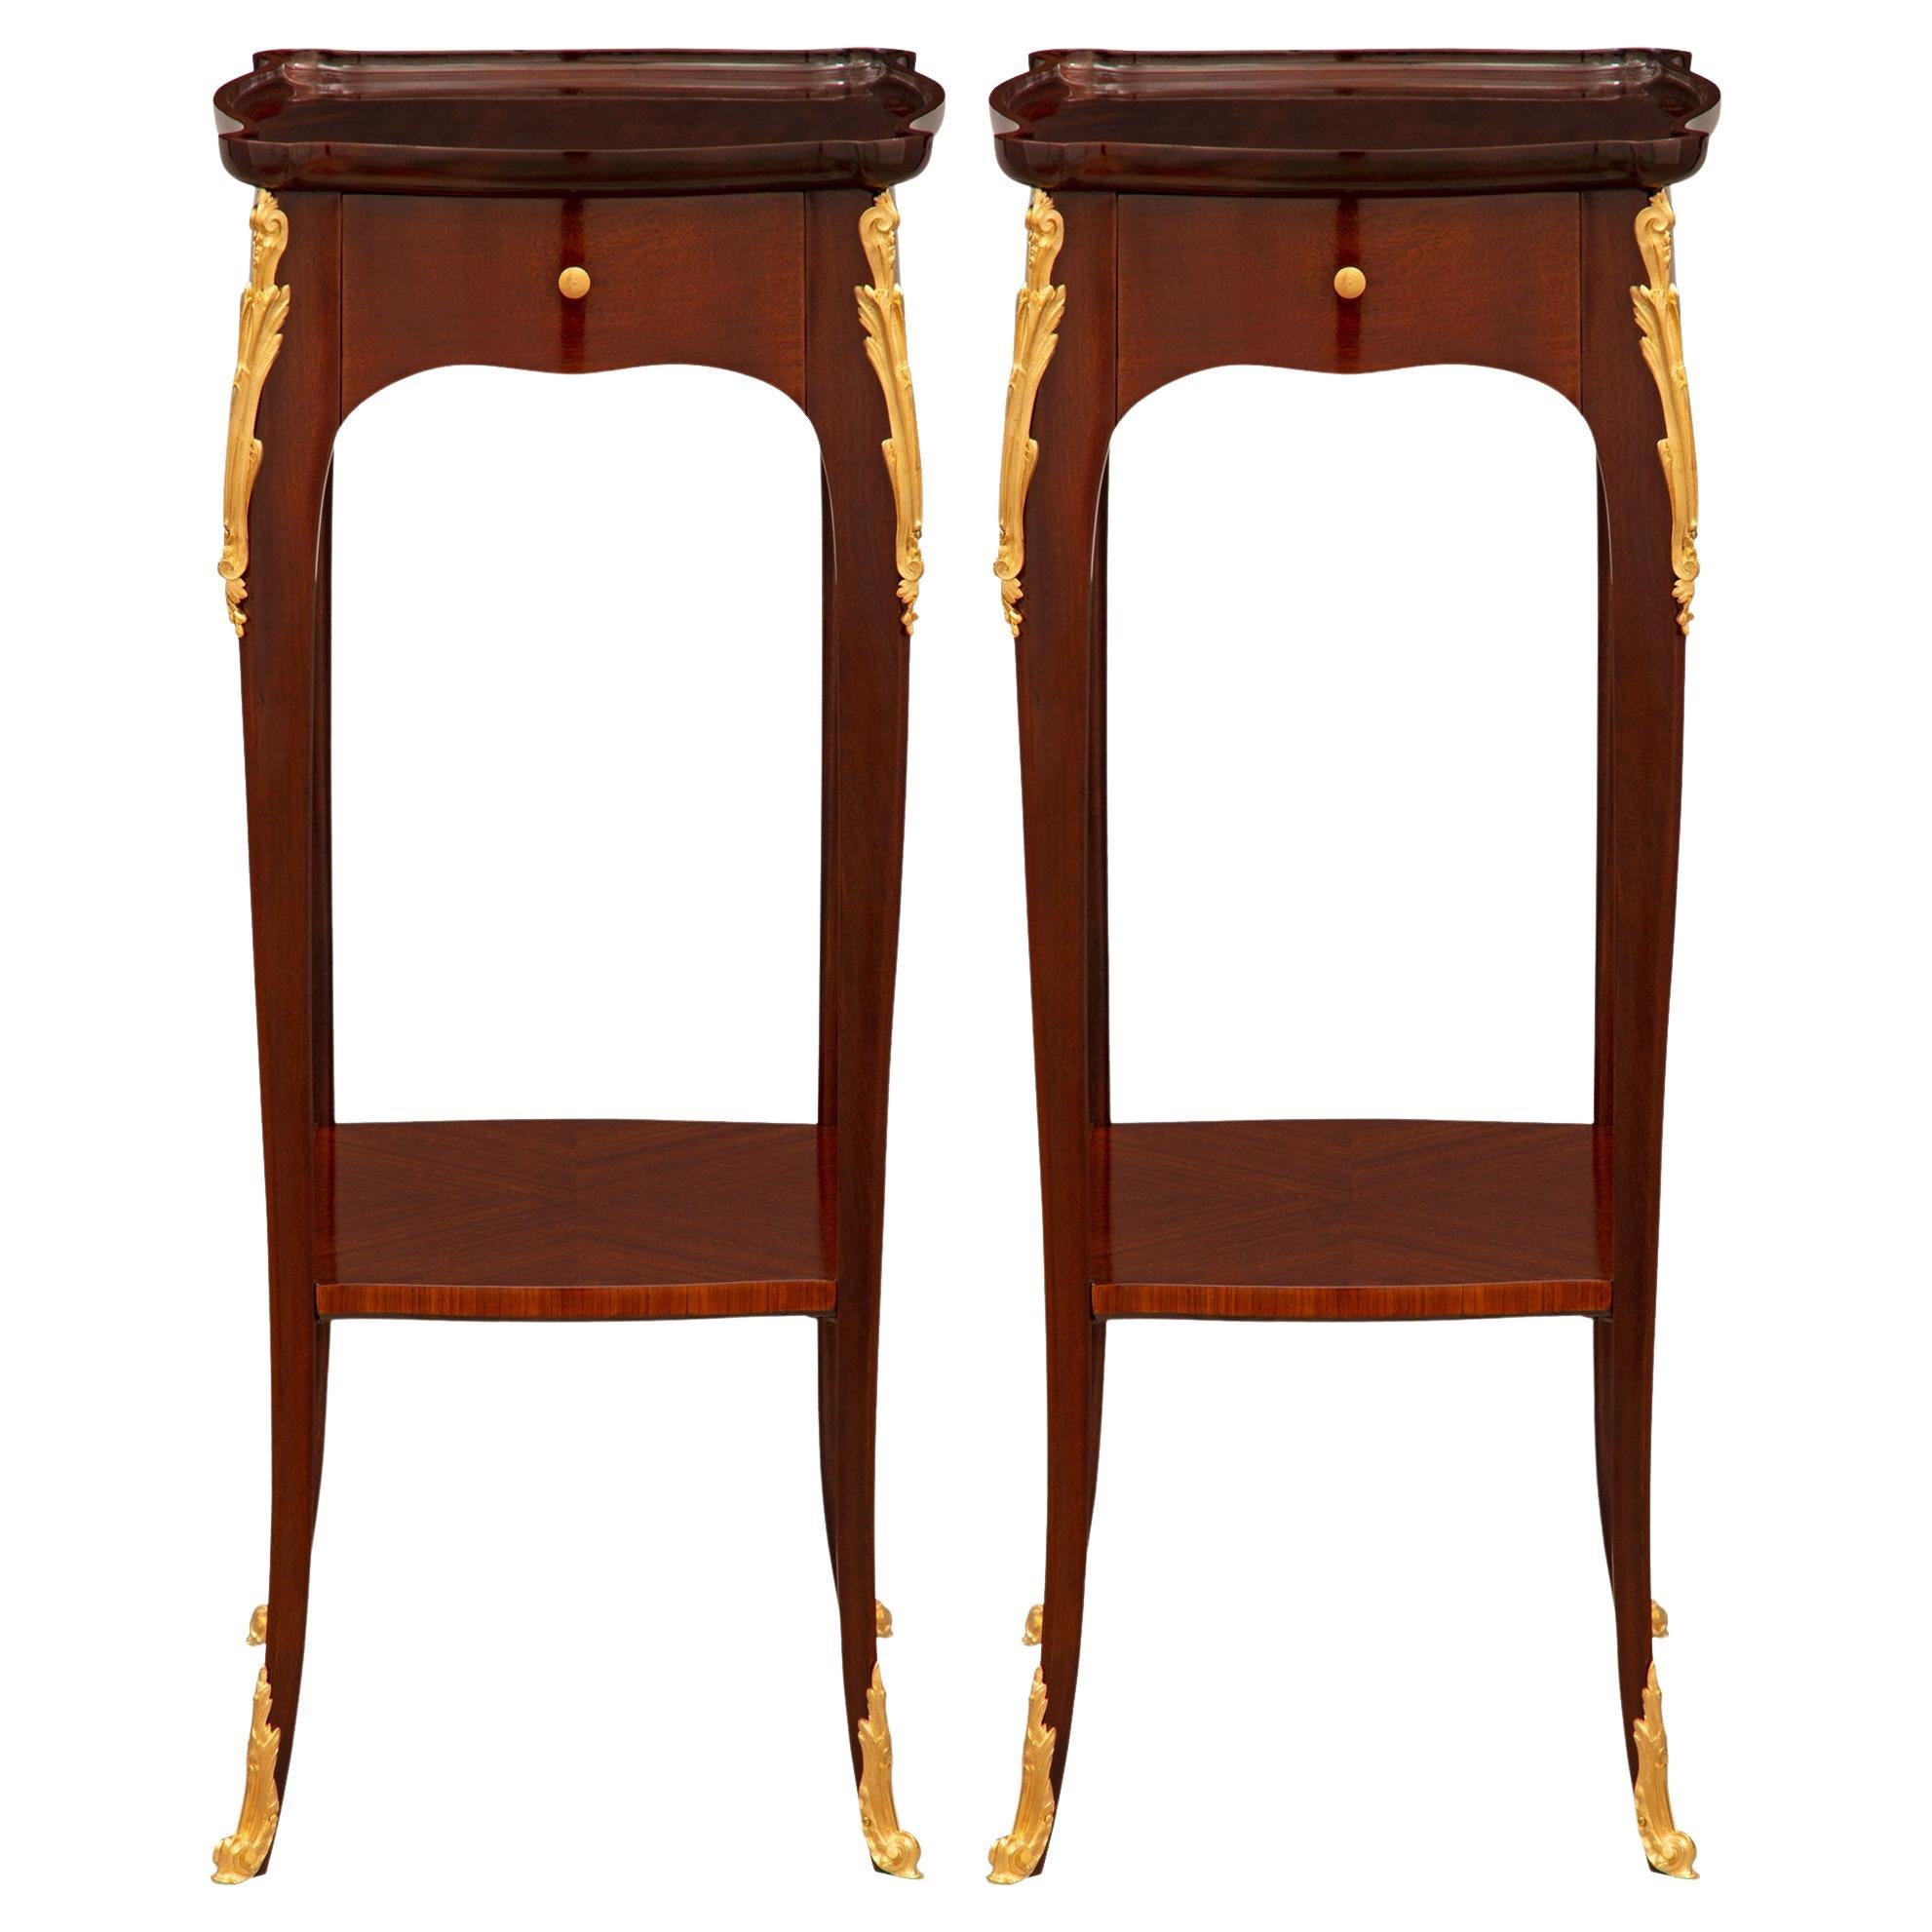 Paire de tables d'appoint françaises en acajou et bronze doré de style Louis XV de la fin du XIXe siècle